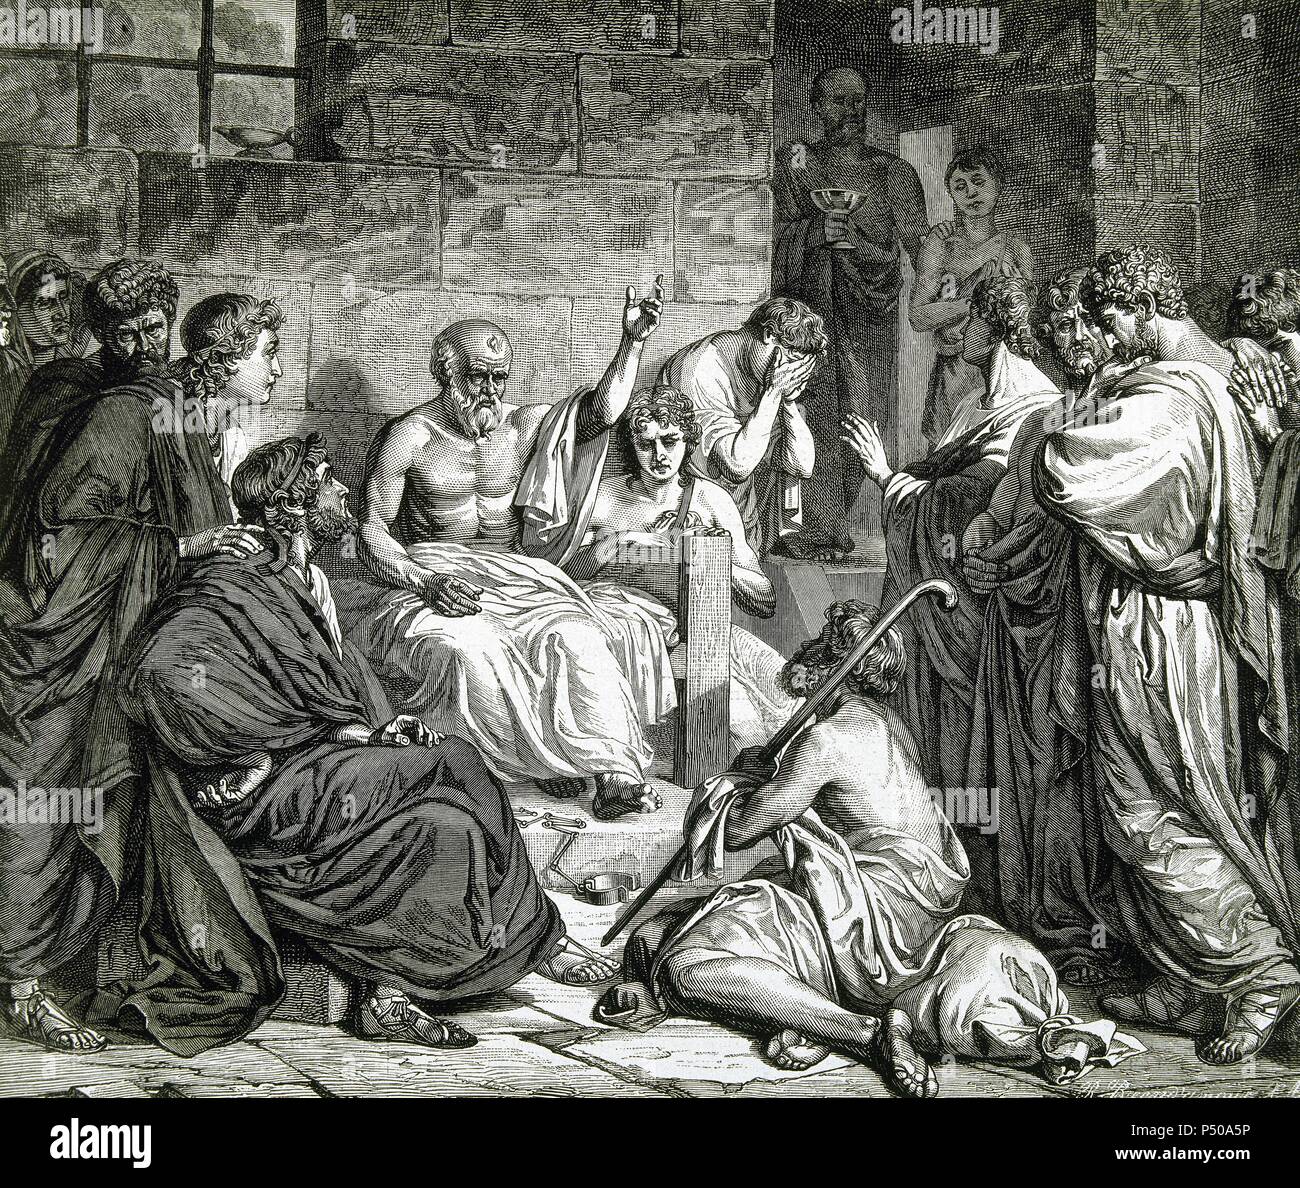 Sócrates (Alopeke, Atica, h.470-Atenas,399 a.C.). Filósofo griego. Fue  acusado de corromper a la juventud, siendo condenado a muerte por la Heliza  (tribunal popular de Atenas). 'Muerte de SÓCRATES EN LA PRISIÓN". Grabado